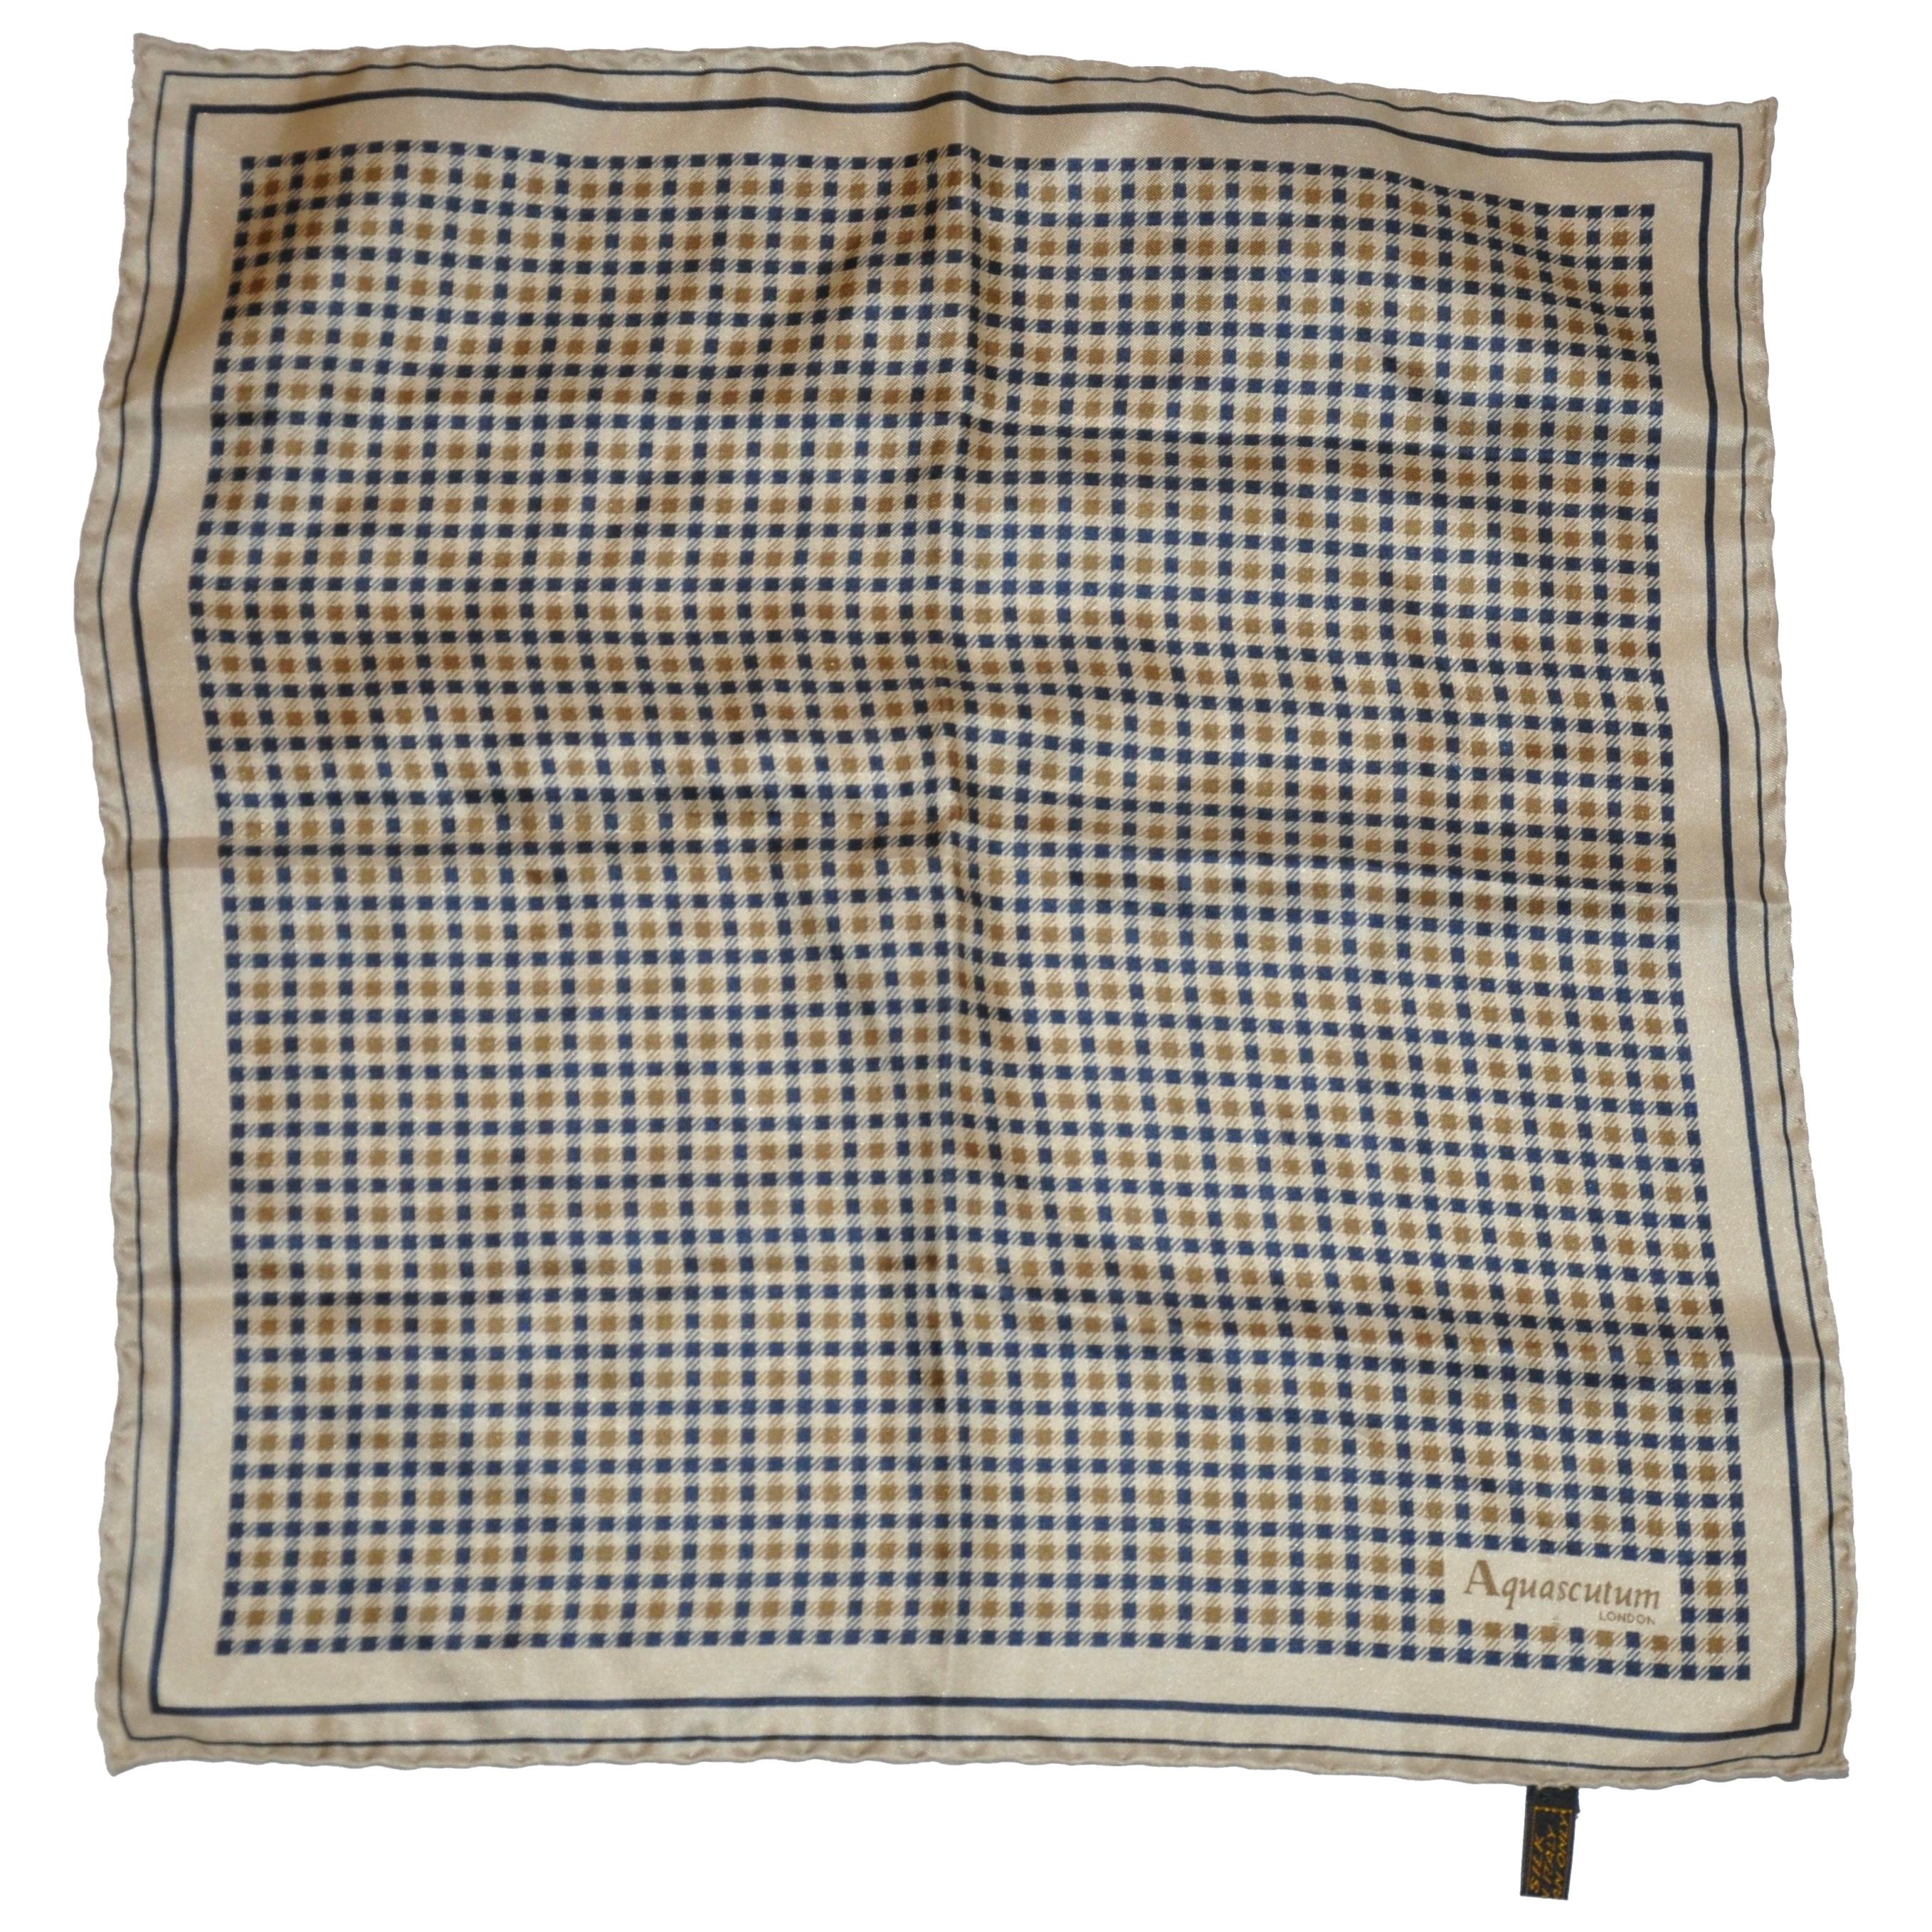 Aquascutum Iconic Men's Silk Handkerchief